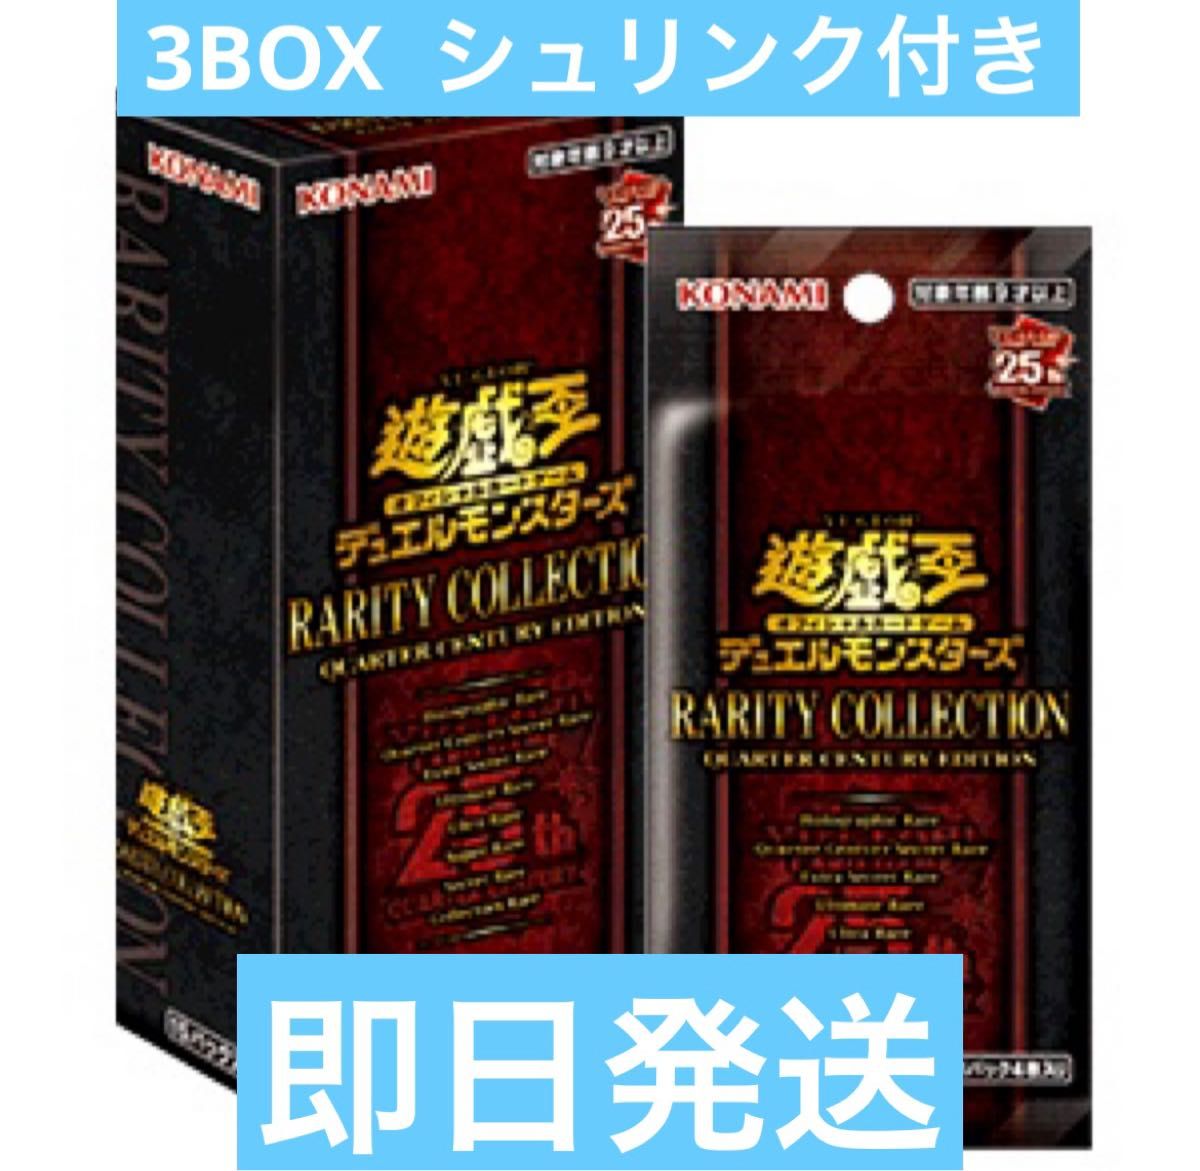 人気物 遊戯王 レアリティコレクション 3BOX シュリンク付き レアコレ